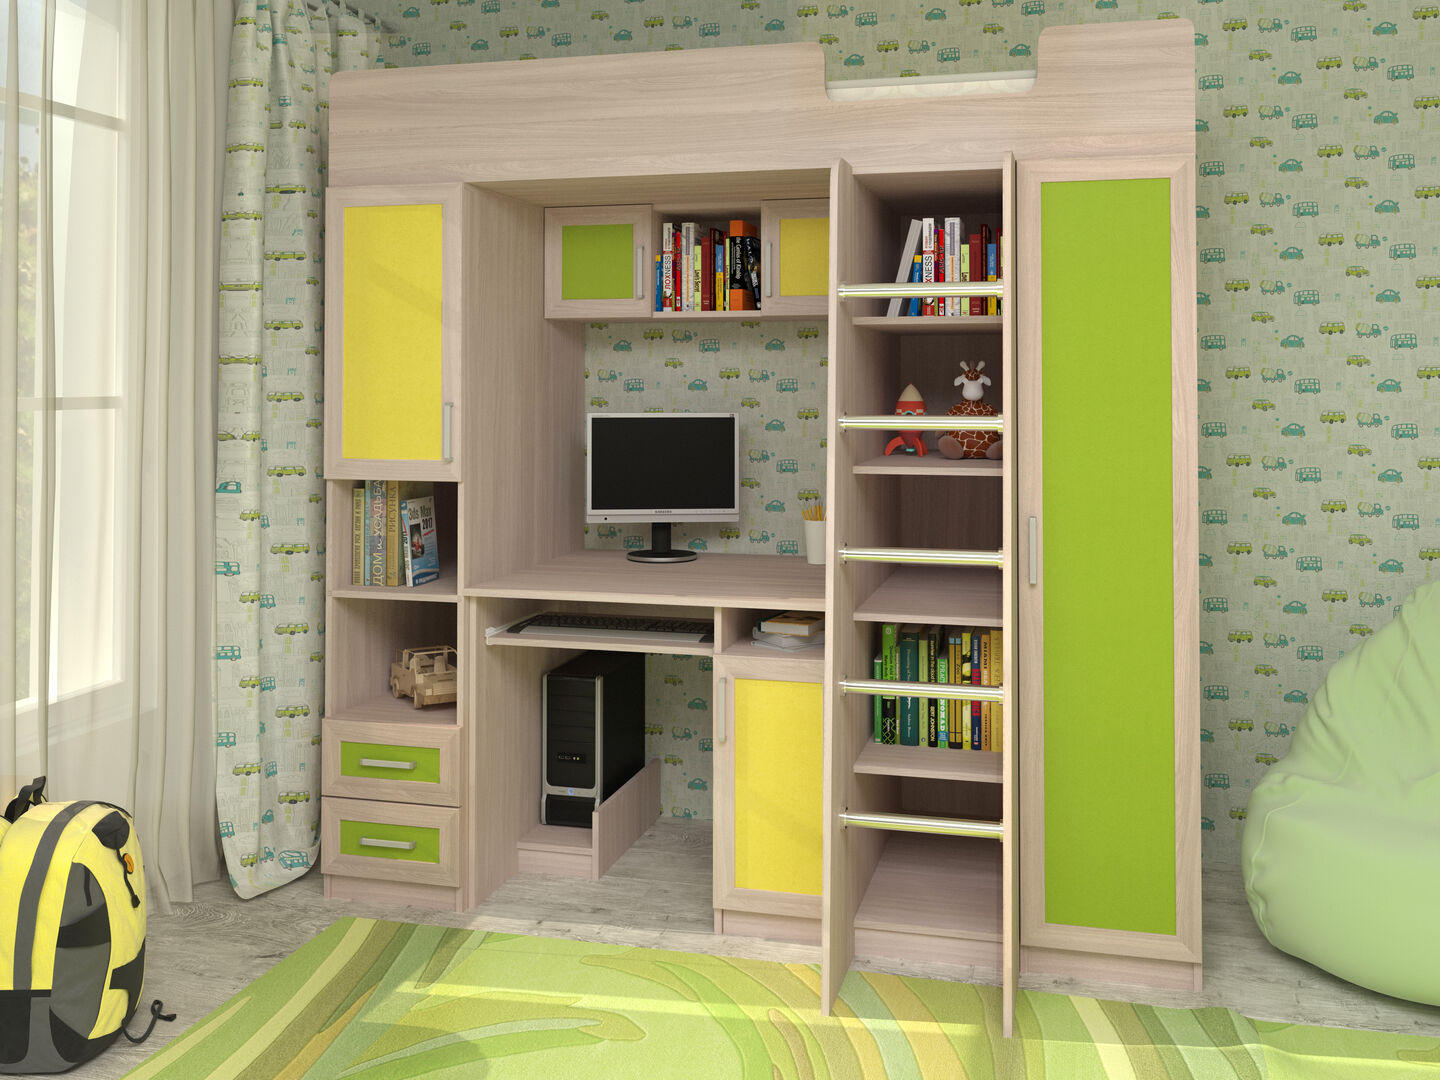 Модульная мебель для детской комнаты фабрики Стиль Карлсон-2